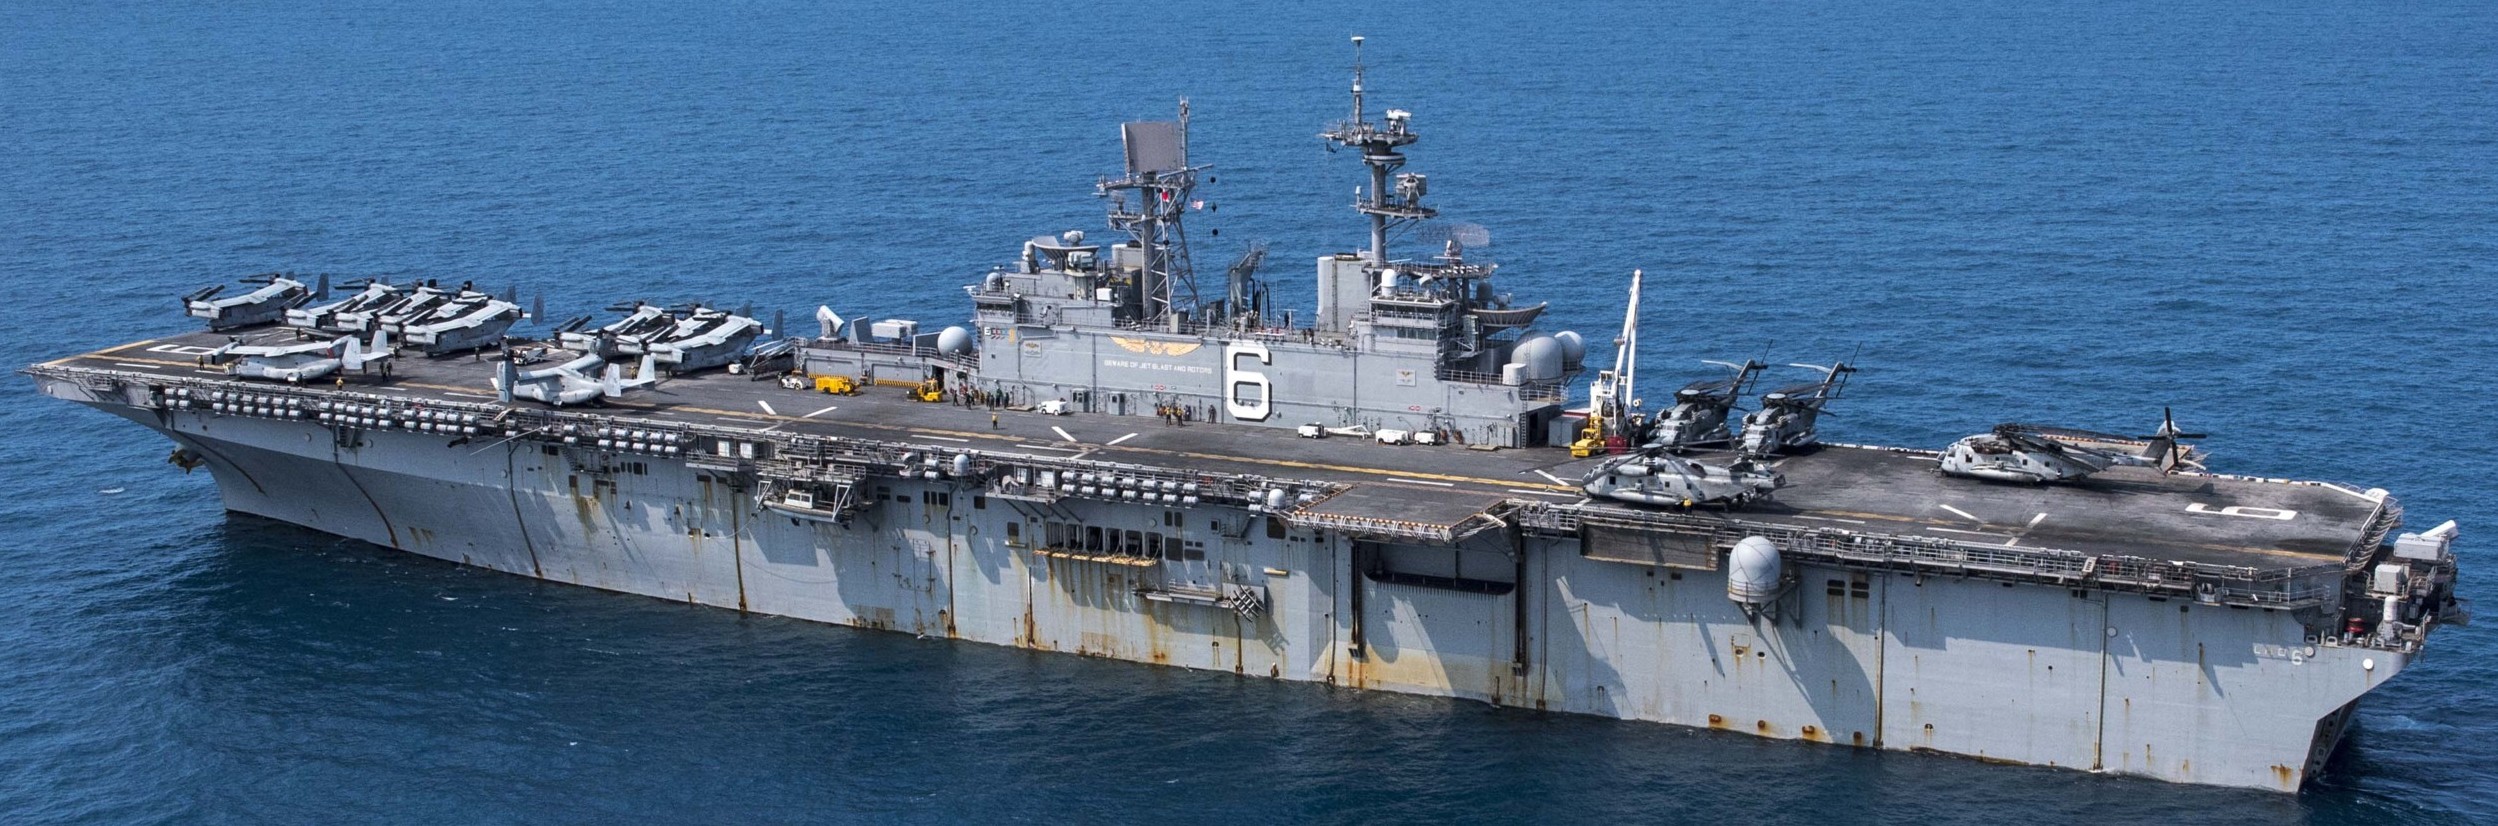 lhd-6 uss bonhomme richard amphibious assault ship landing helicopter dock wasp class us navy 66